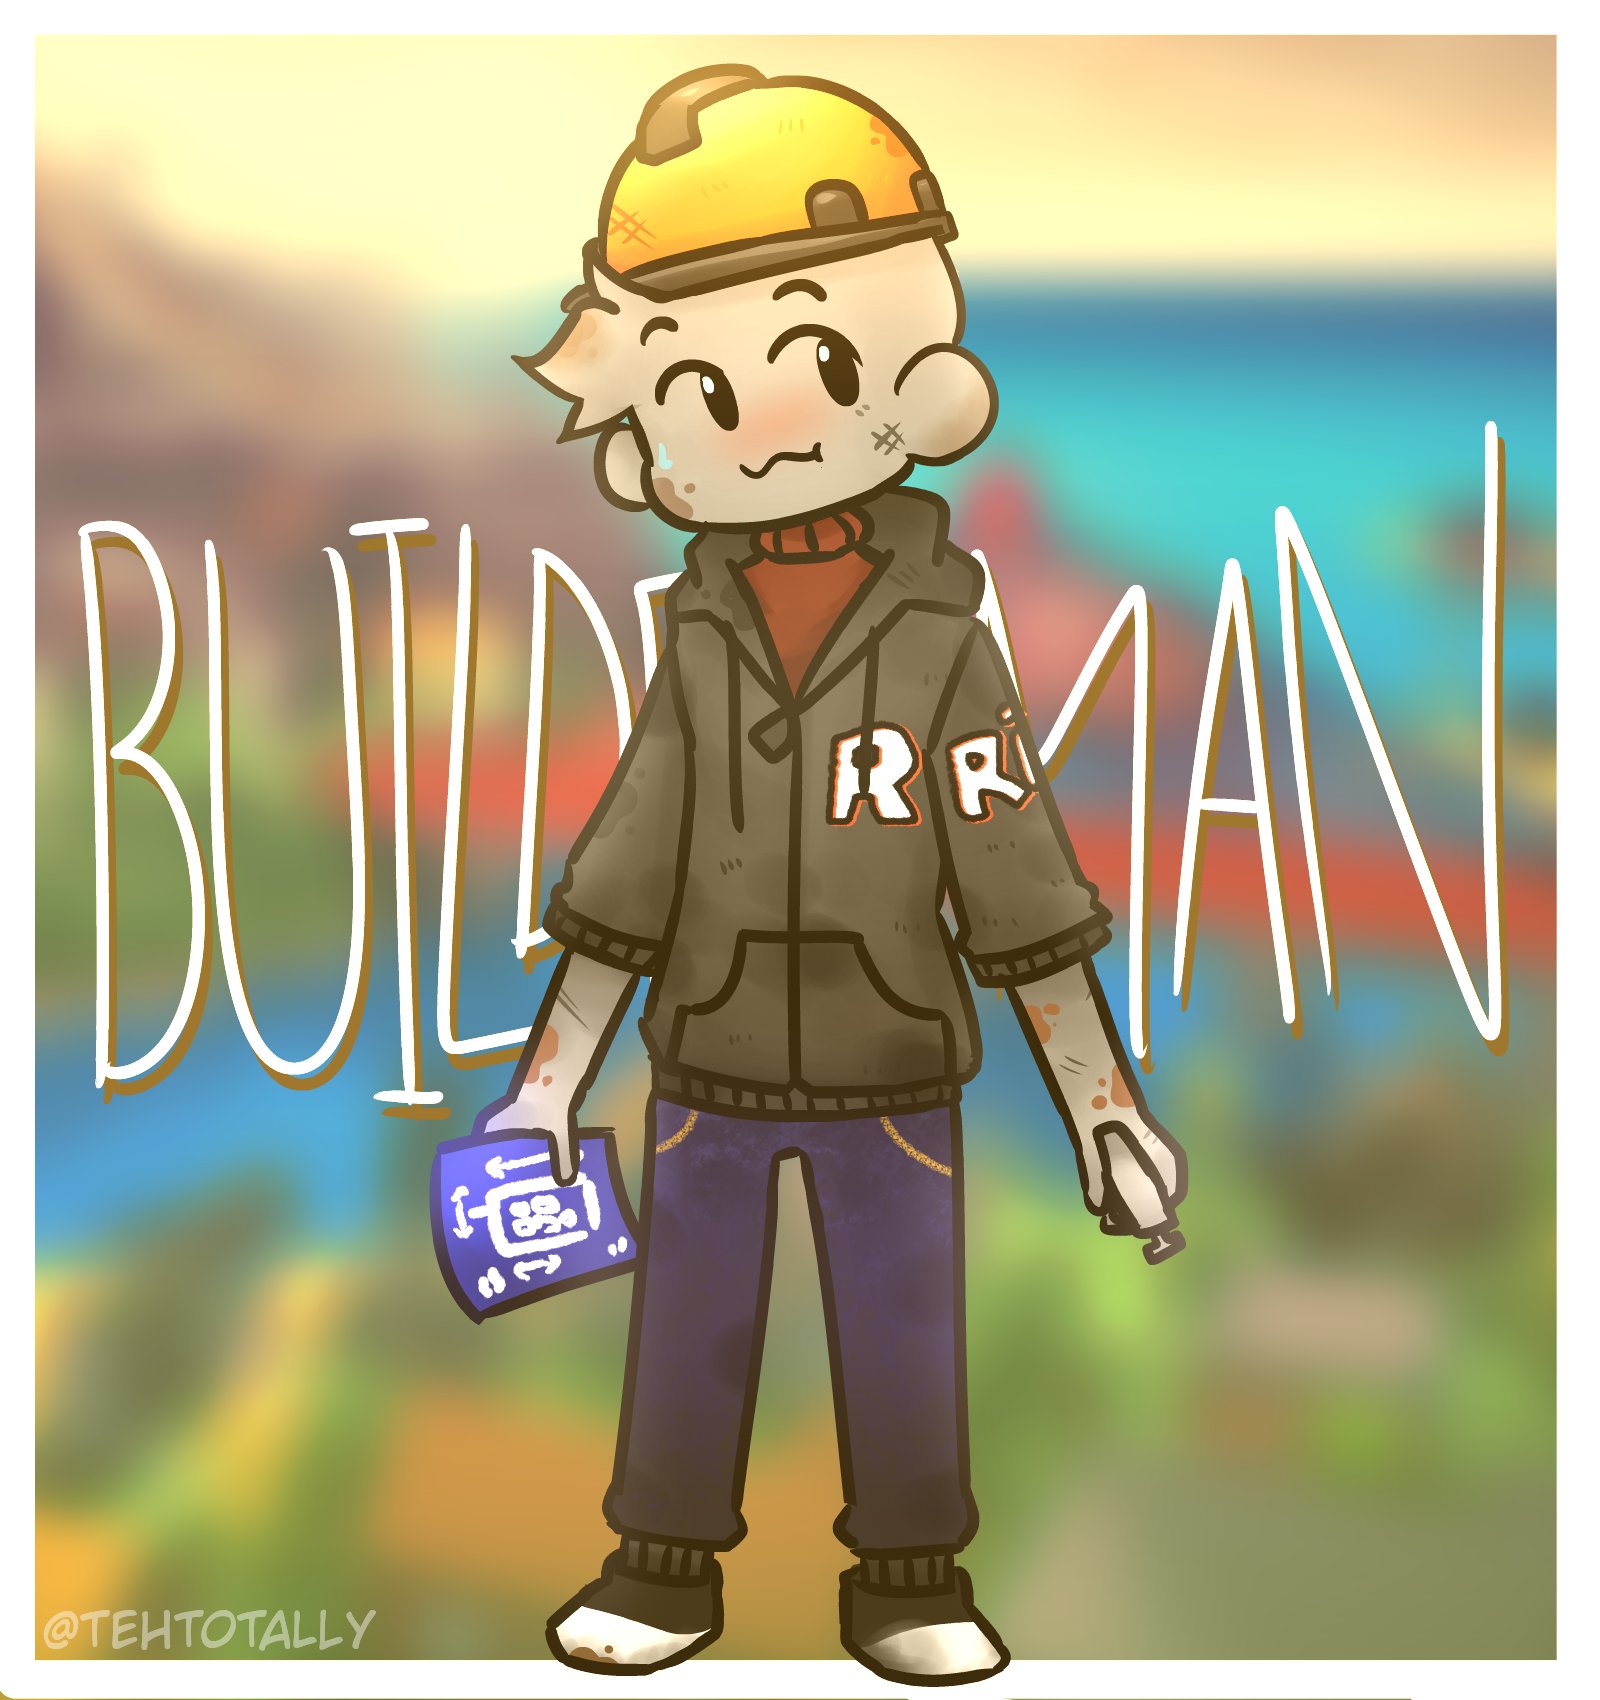 builderman from roblox fanart｜TikTok Search